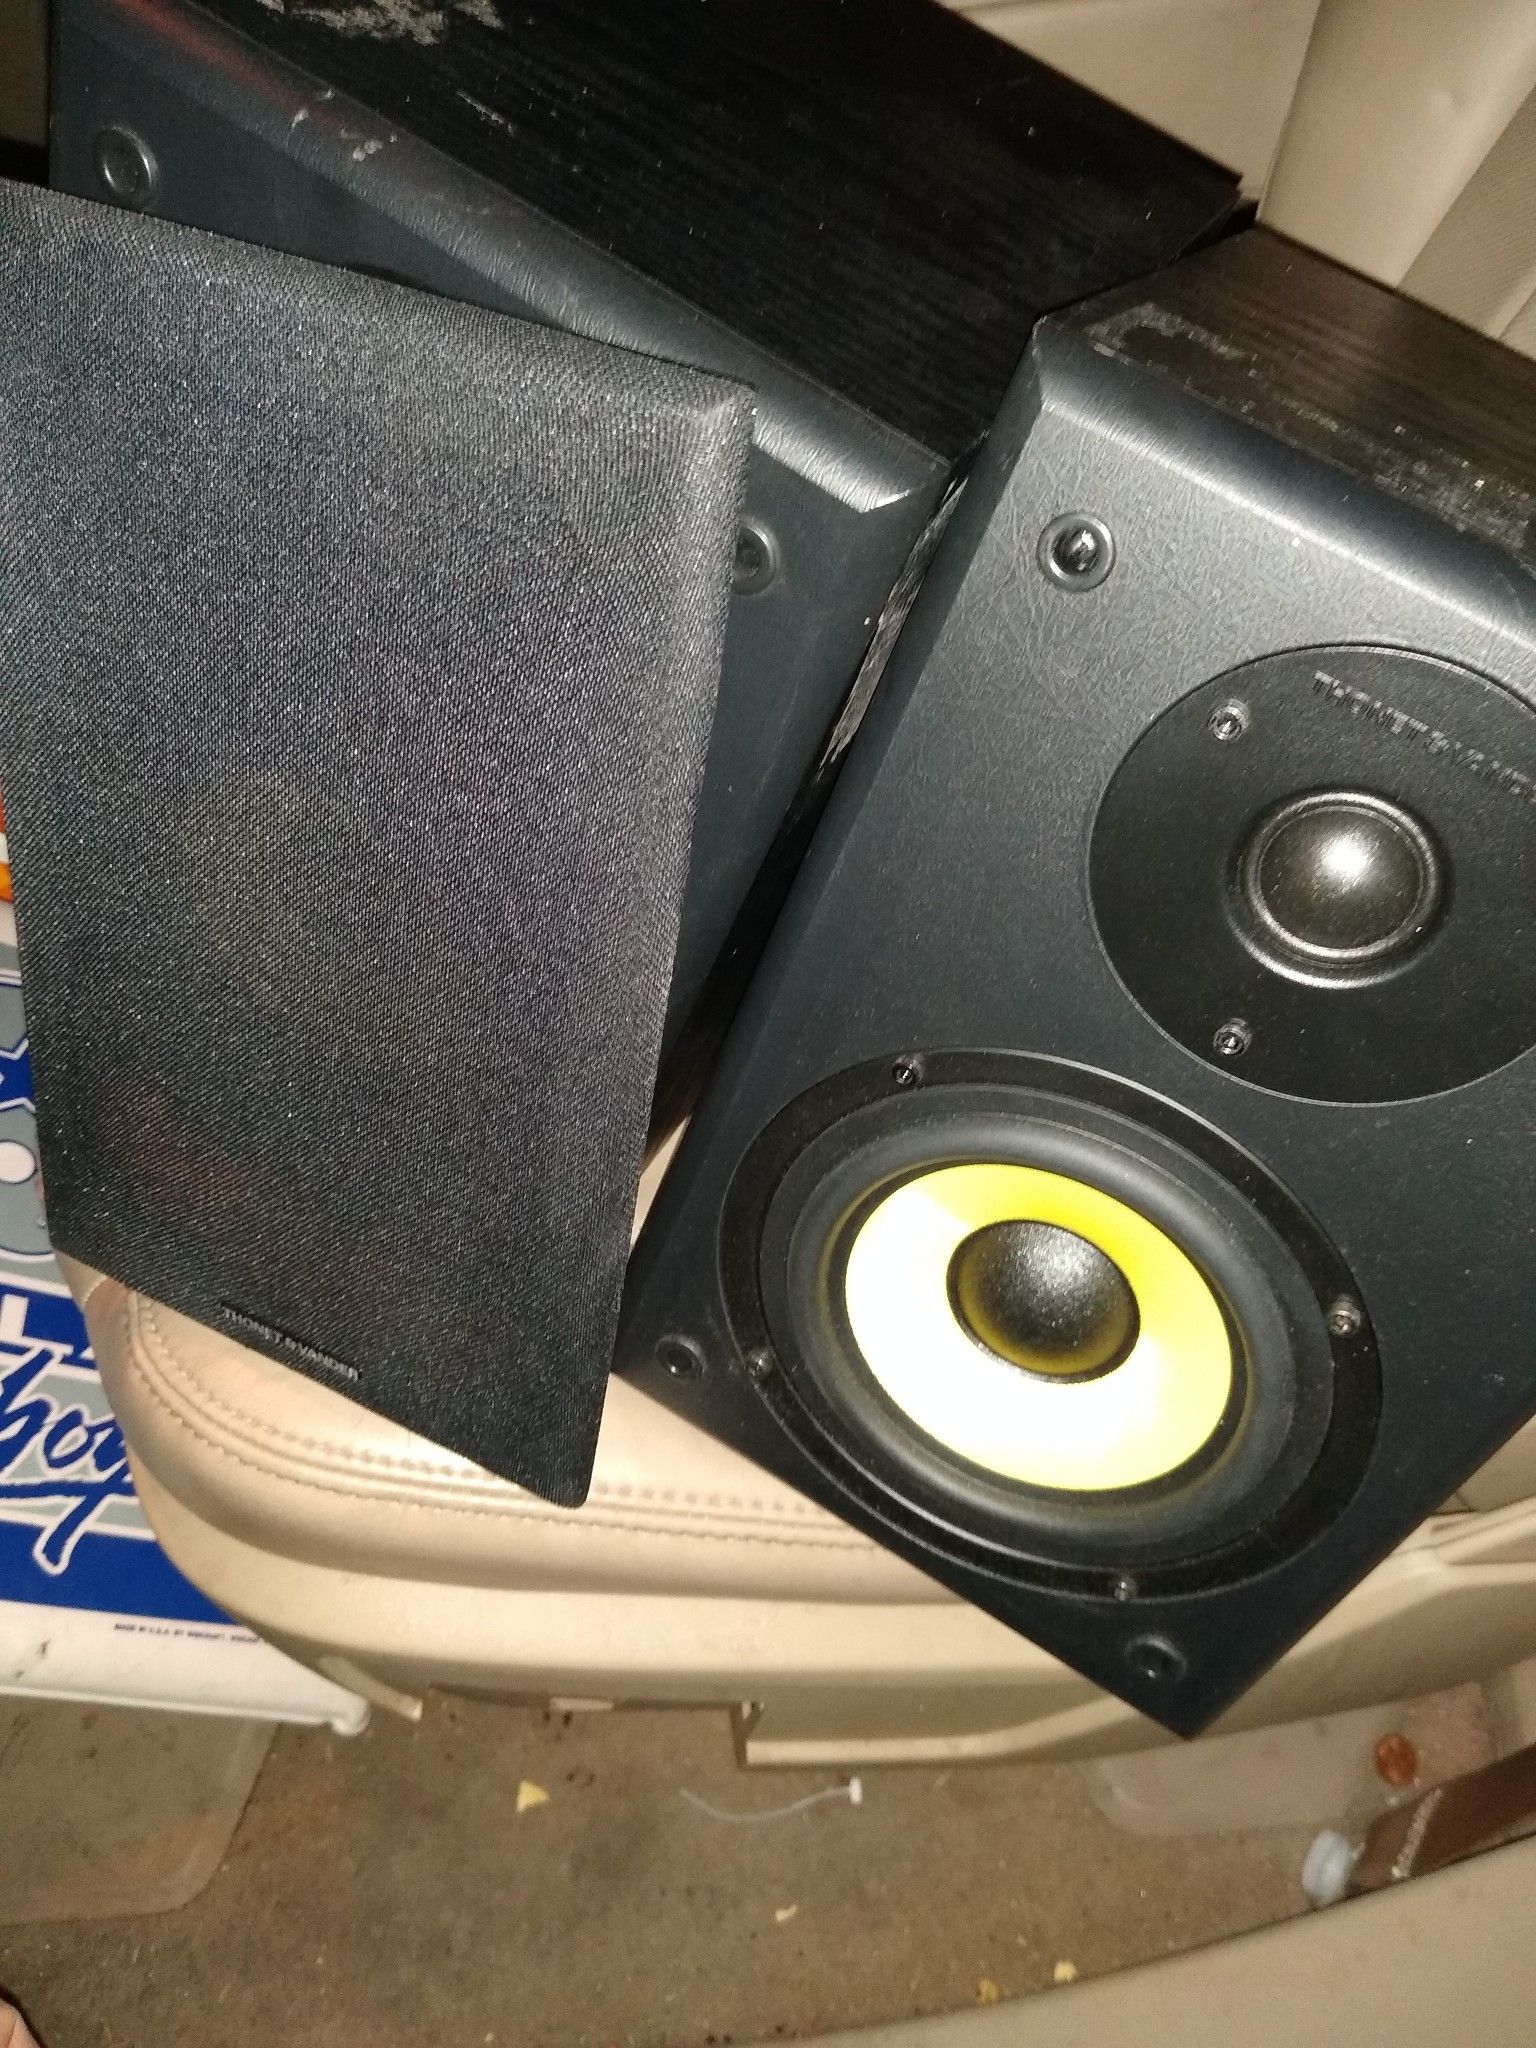 Thonet and Vander 2 piece Bluetooth speaker system